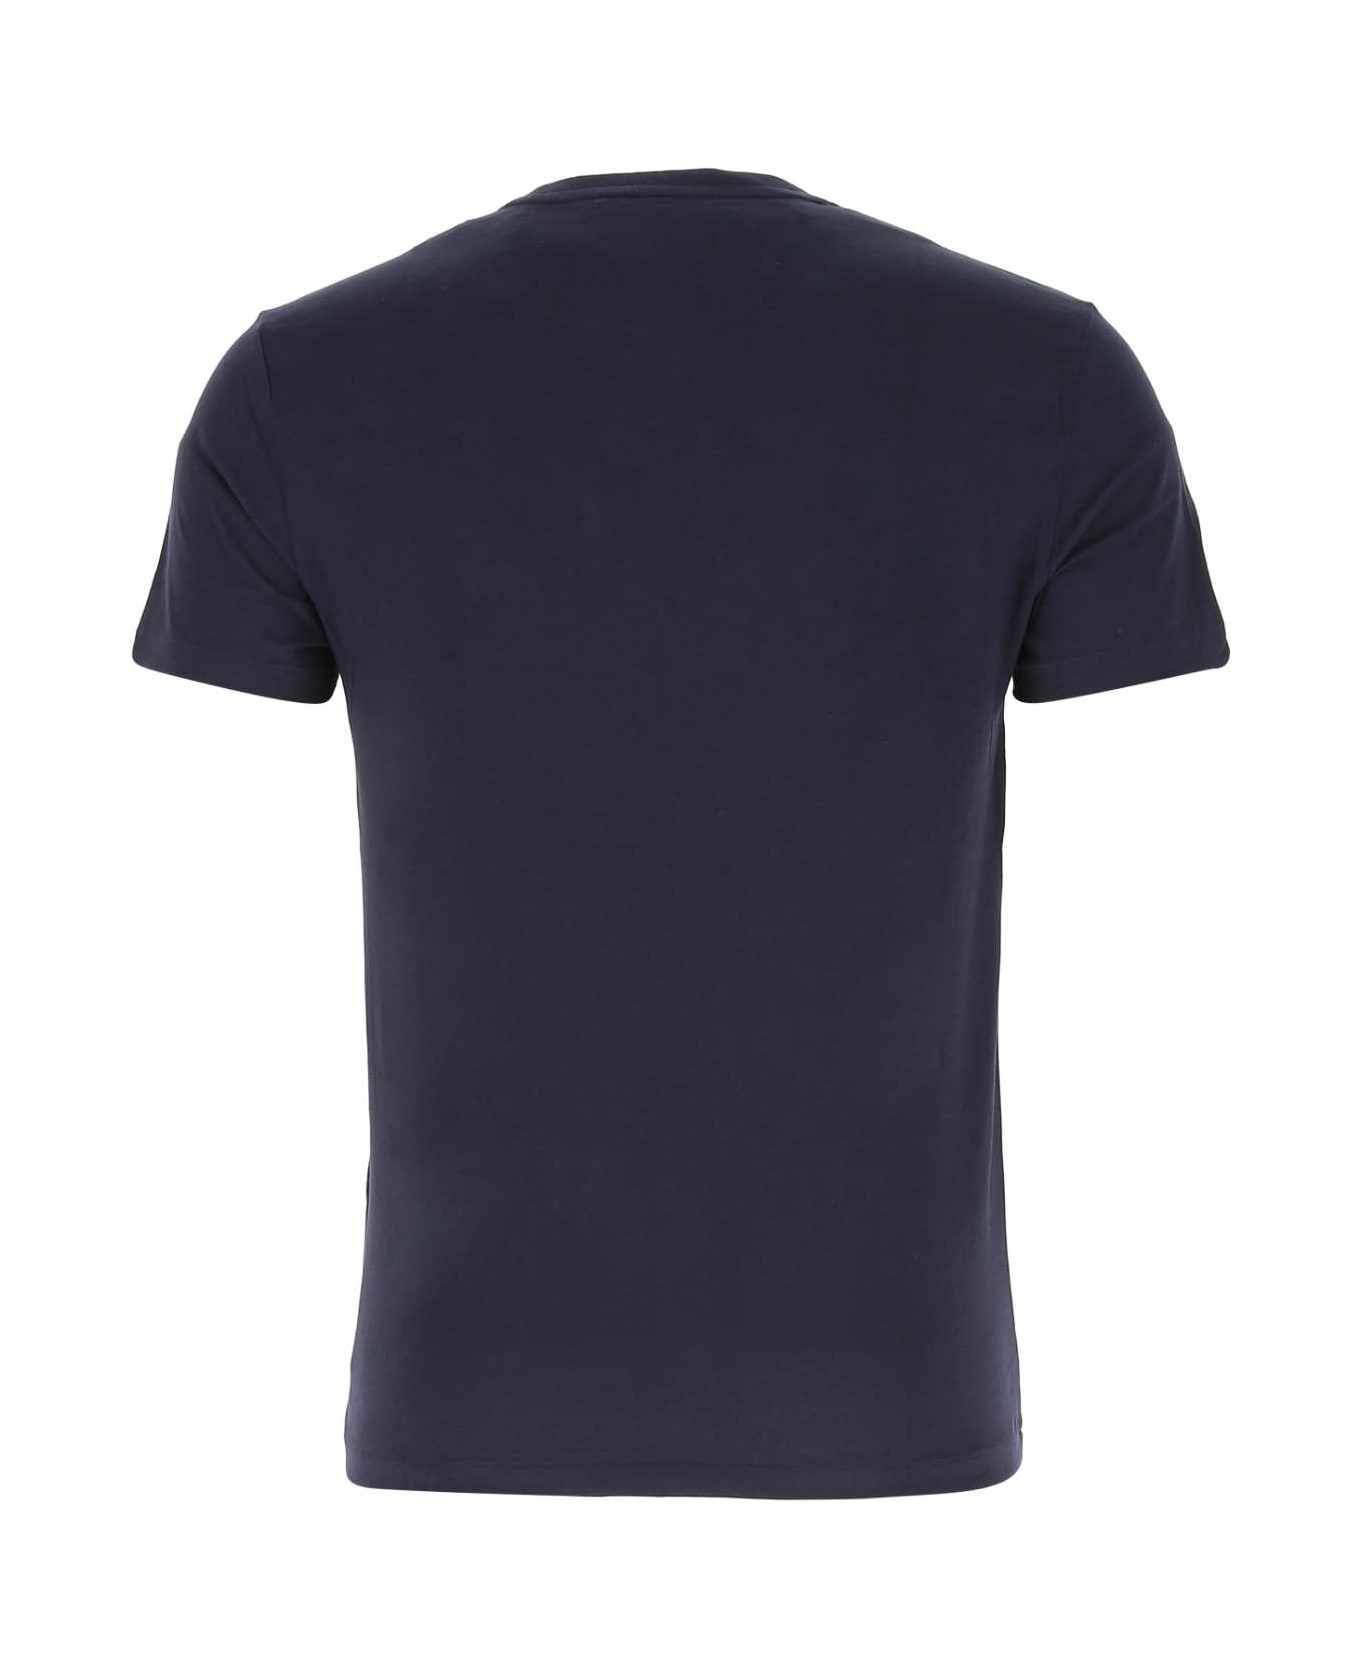 Polo Ralph Lauren Navy Blue Cotton T-shirt - 004